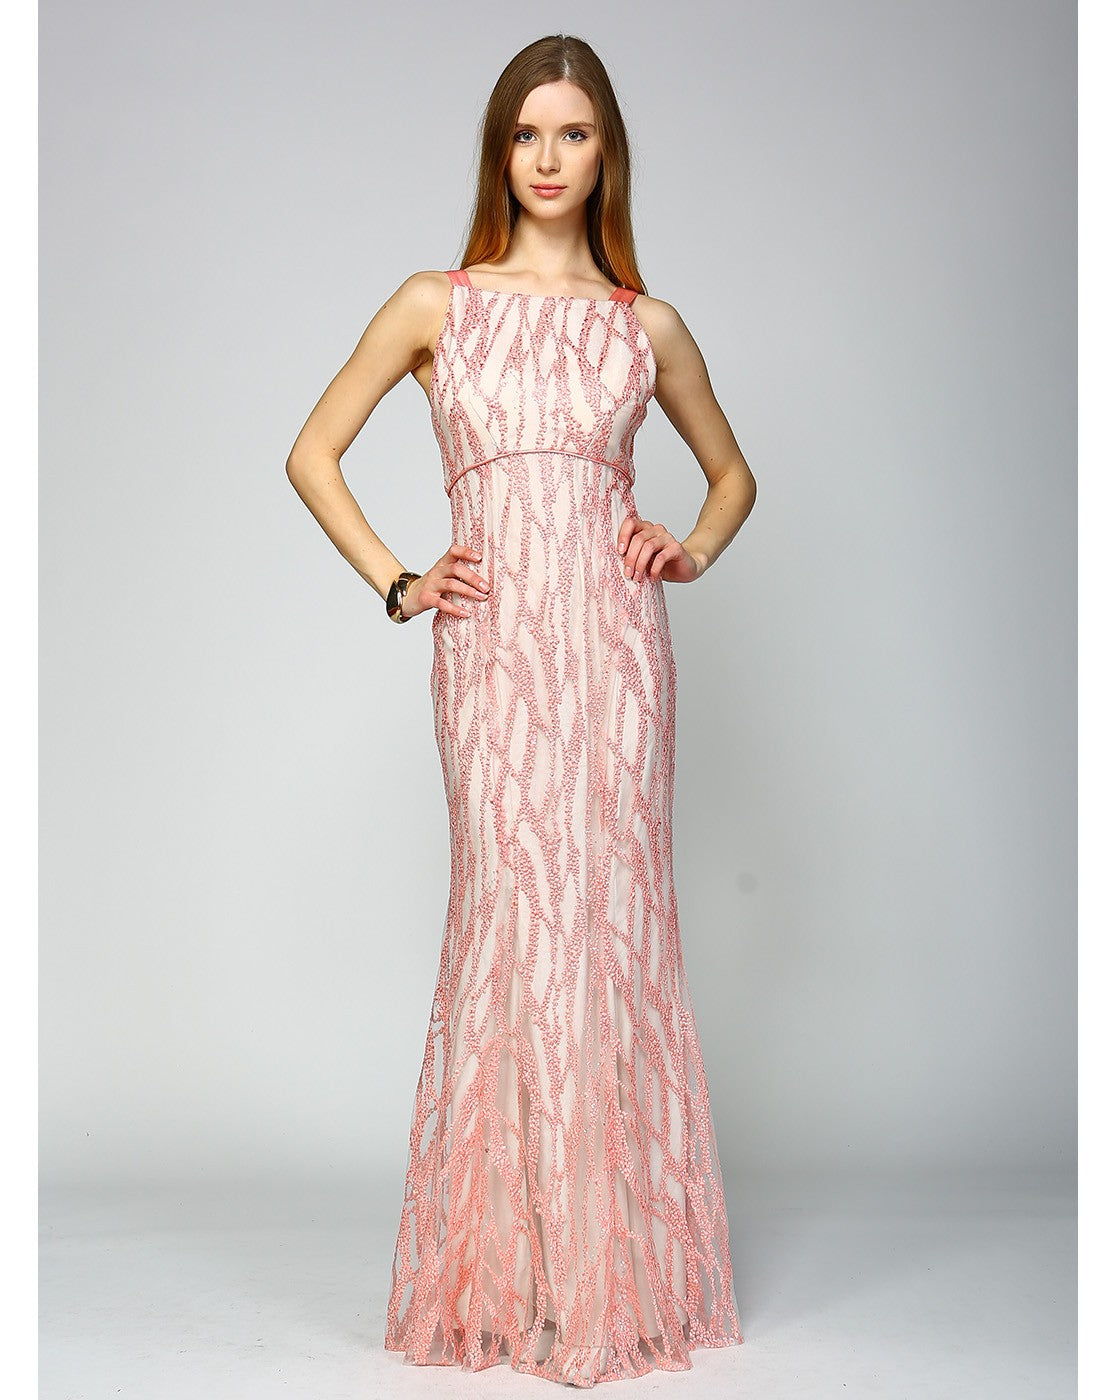 Minuet Maxi Long Wavy Embroidered Dress PinkOrchidFashion